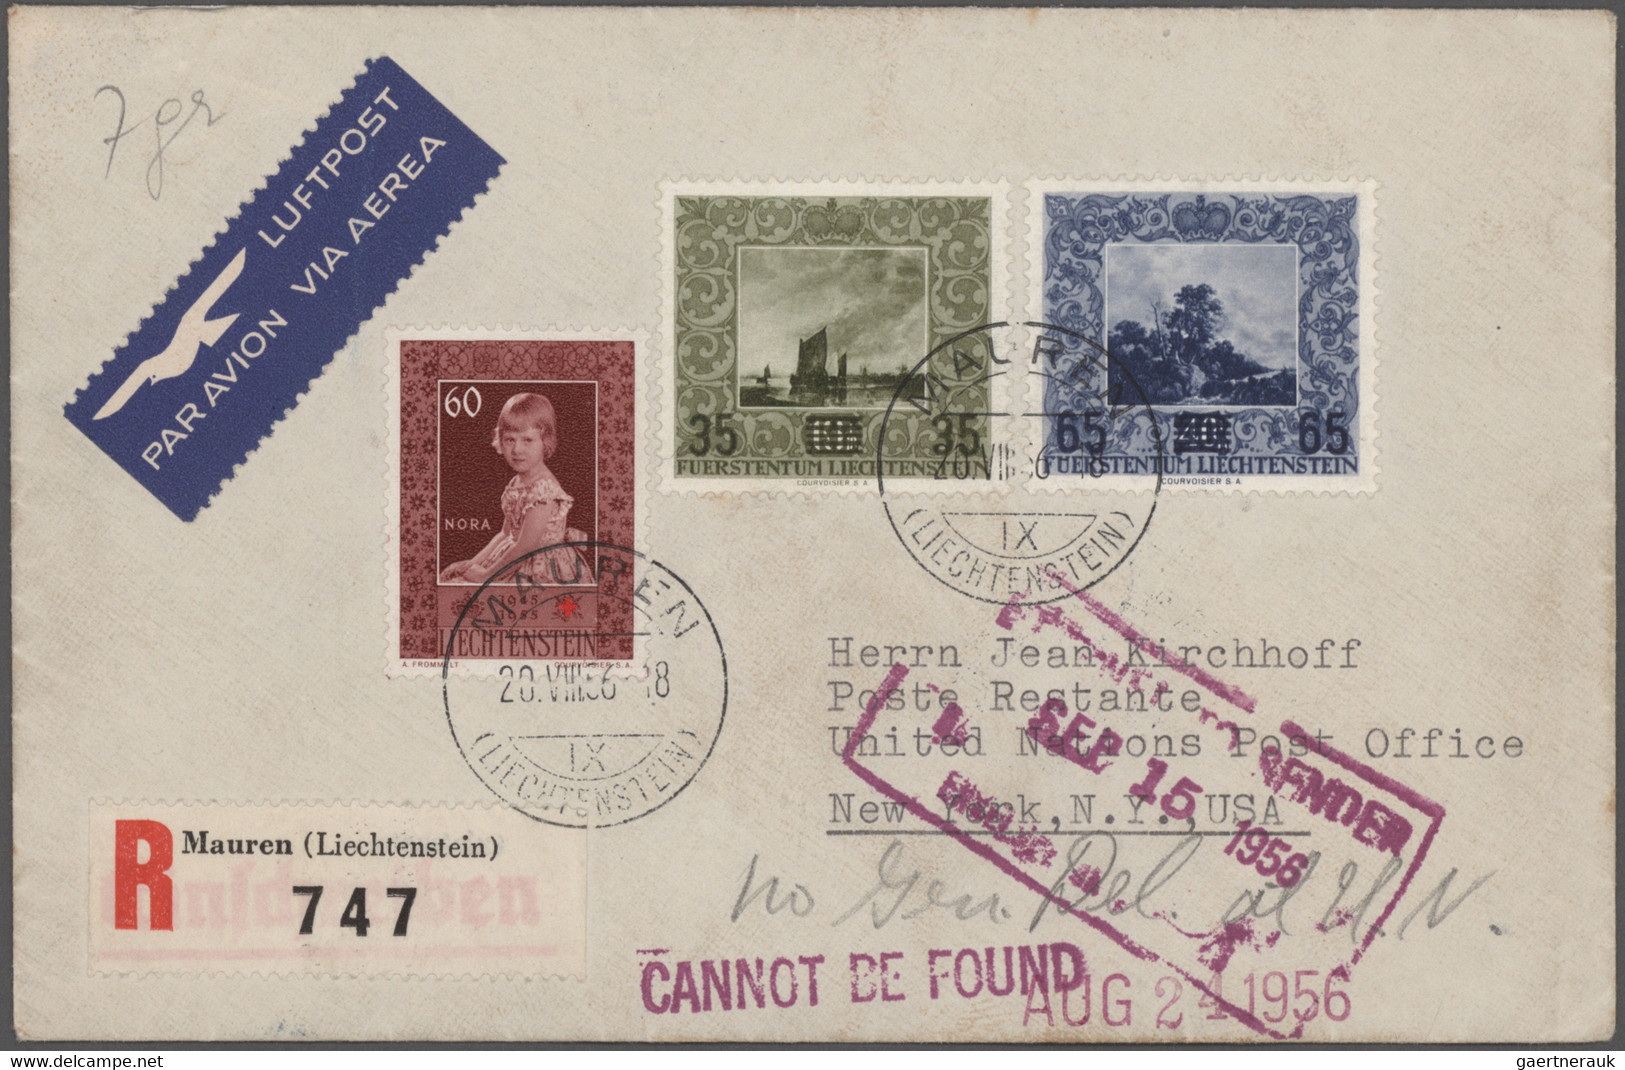 Liechtenstein: 1918/1980, sehr umfangreicher Posten mit Bedarfsbriefen, Sammlerbriefen, Ganzsachen g